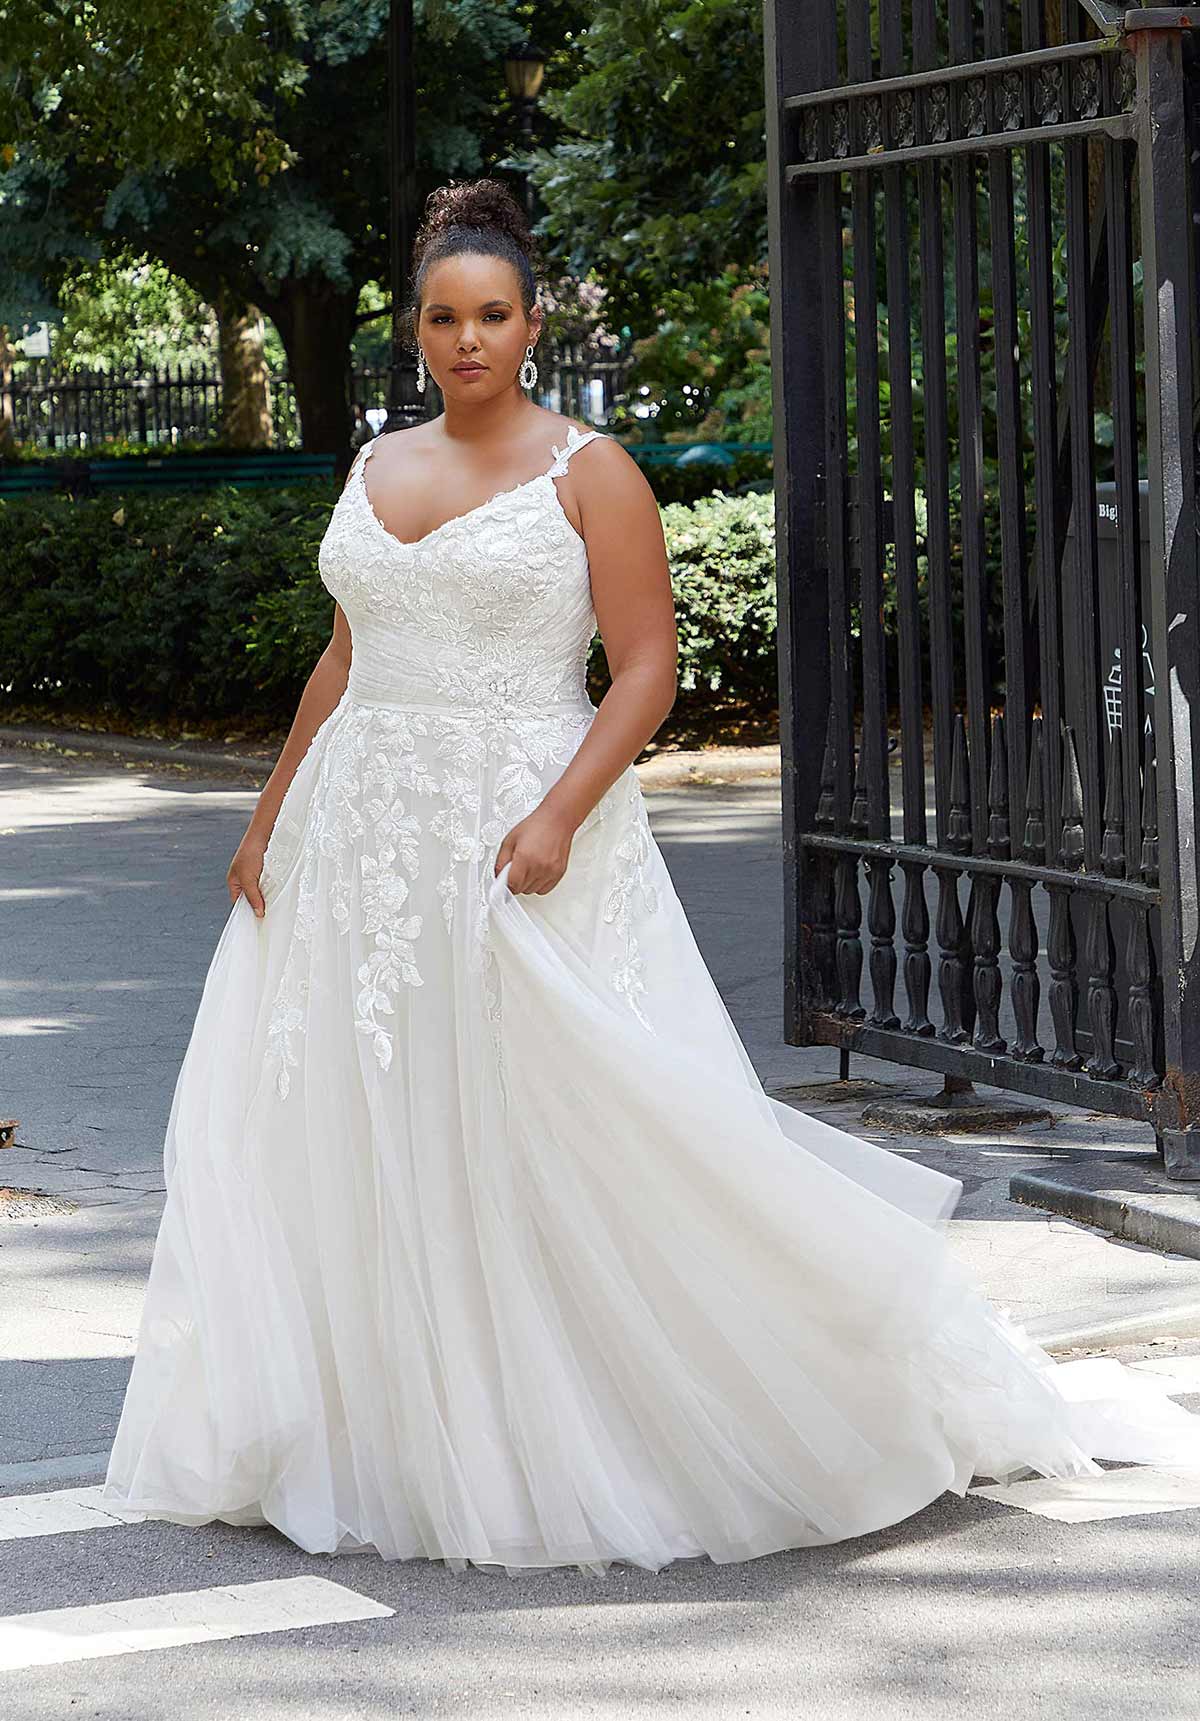 Julietta - 3377 - Haley - Cheron's Bridal, Wedding Gown